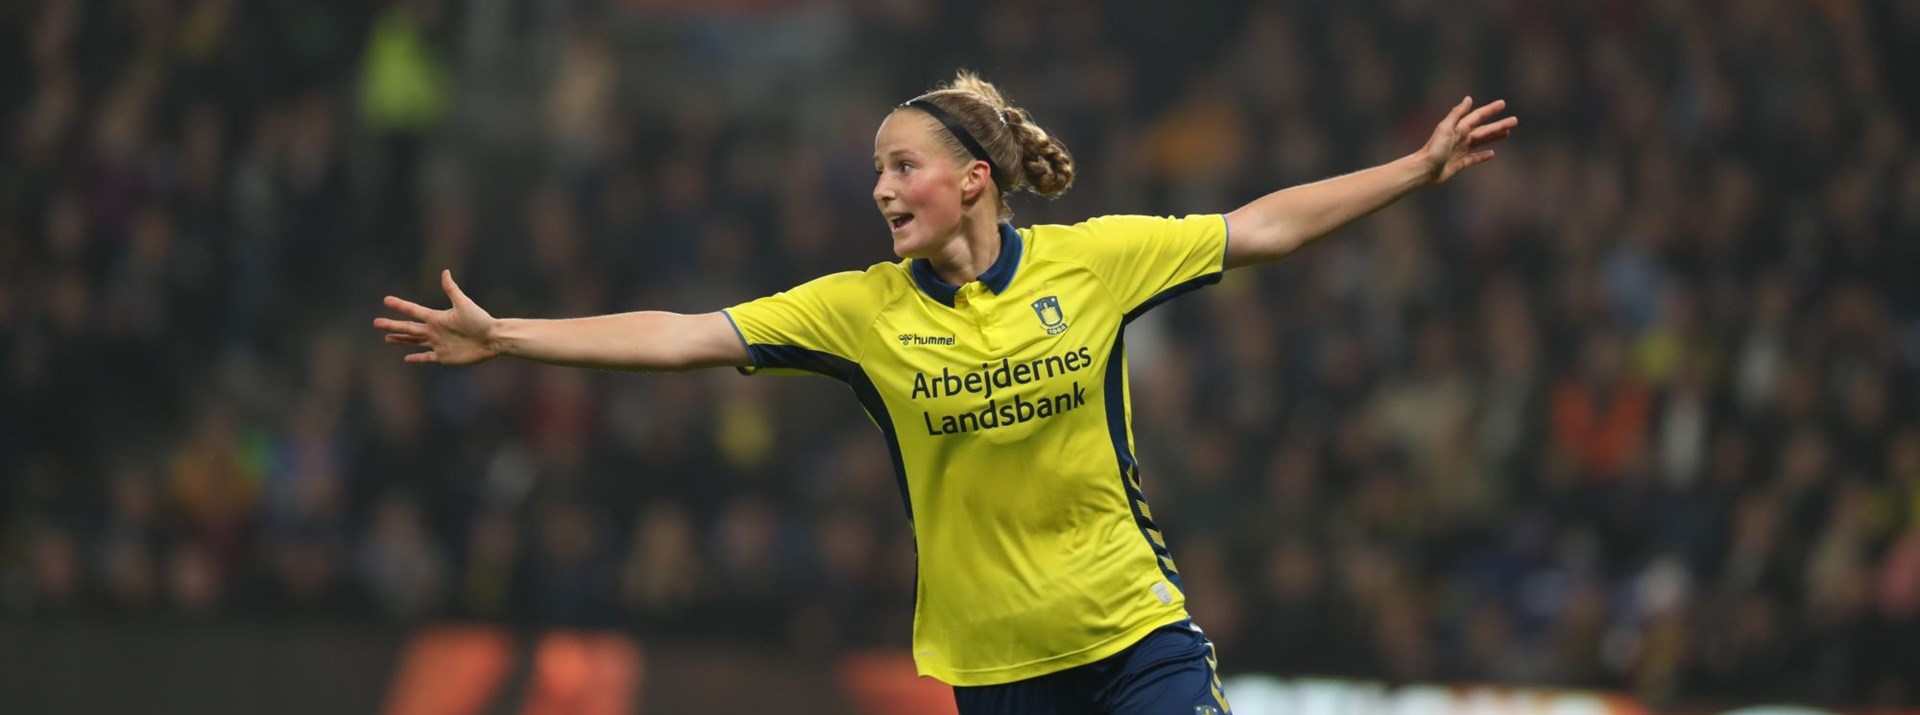 Nicoline Soerensen Er Nomineret Til Aarets Kvindeliga-fodboldspiller 2019